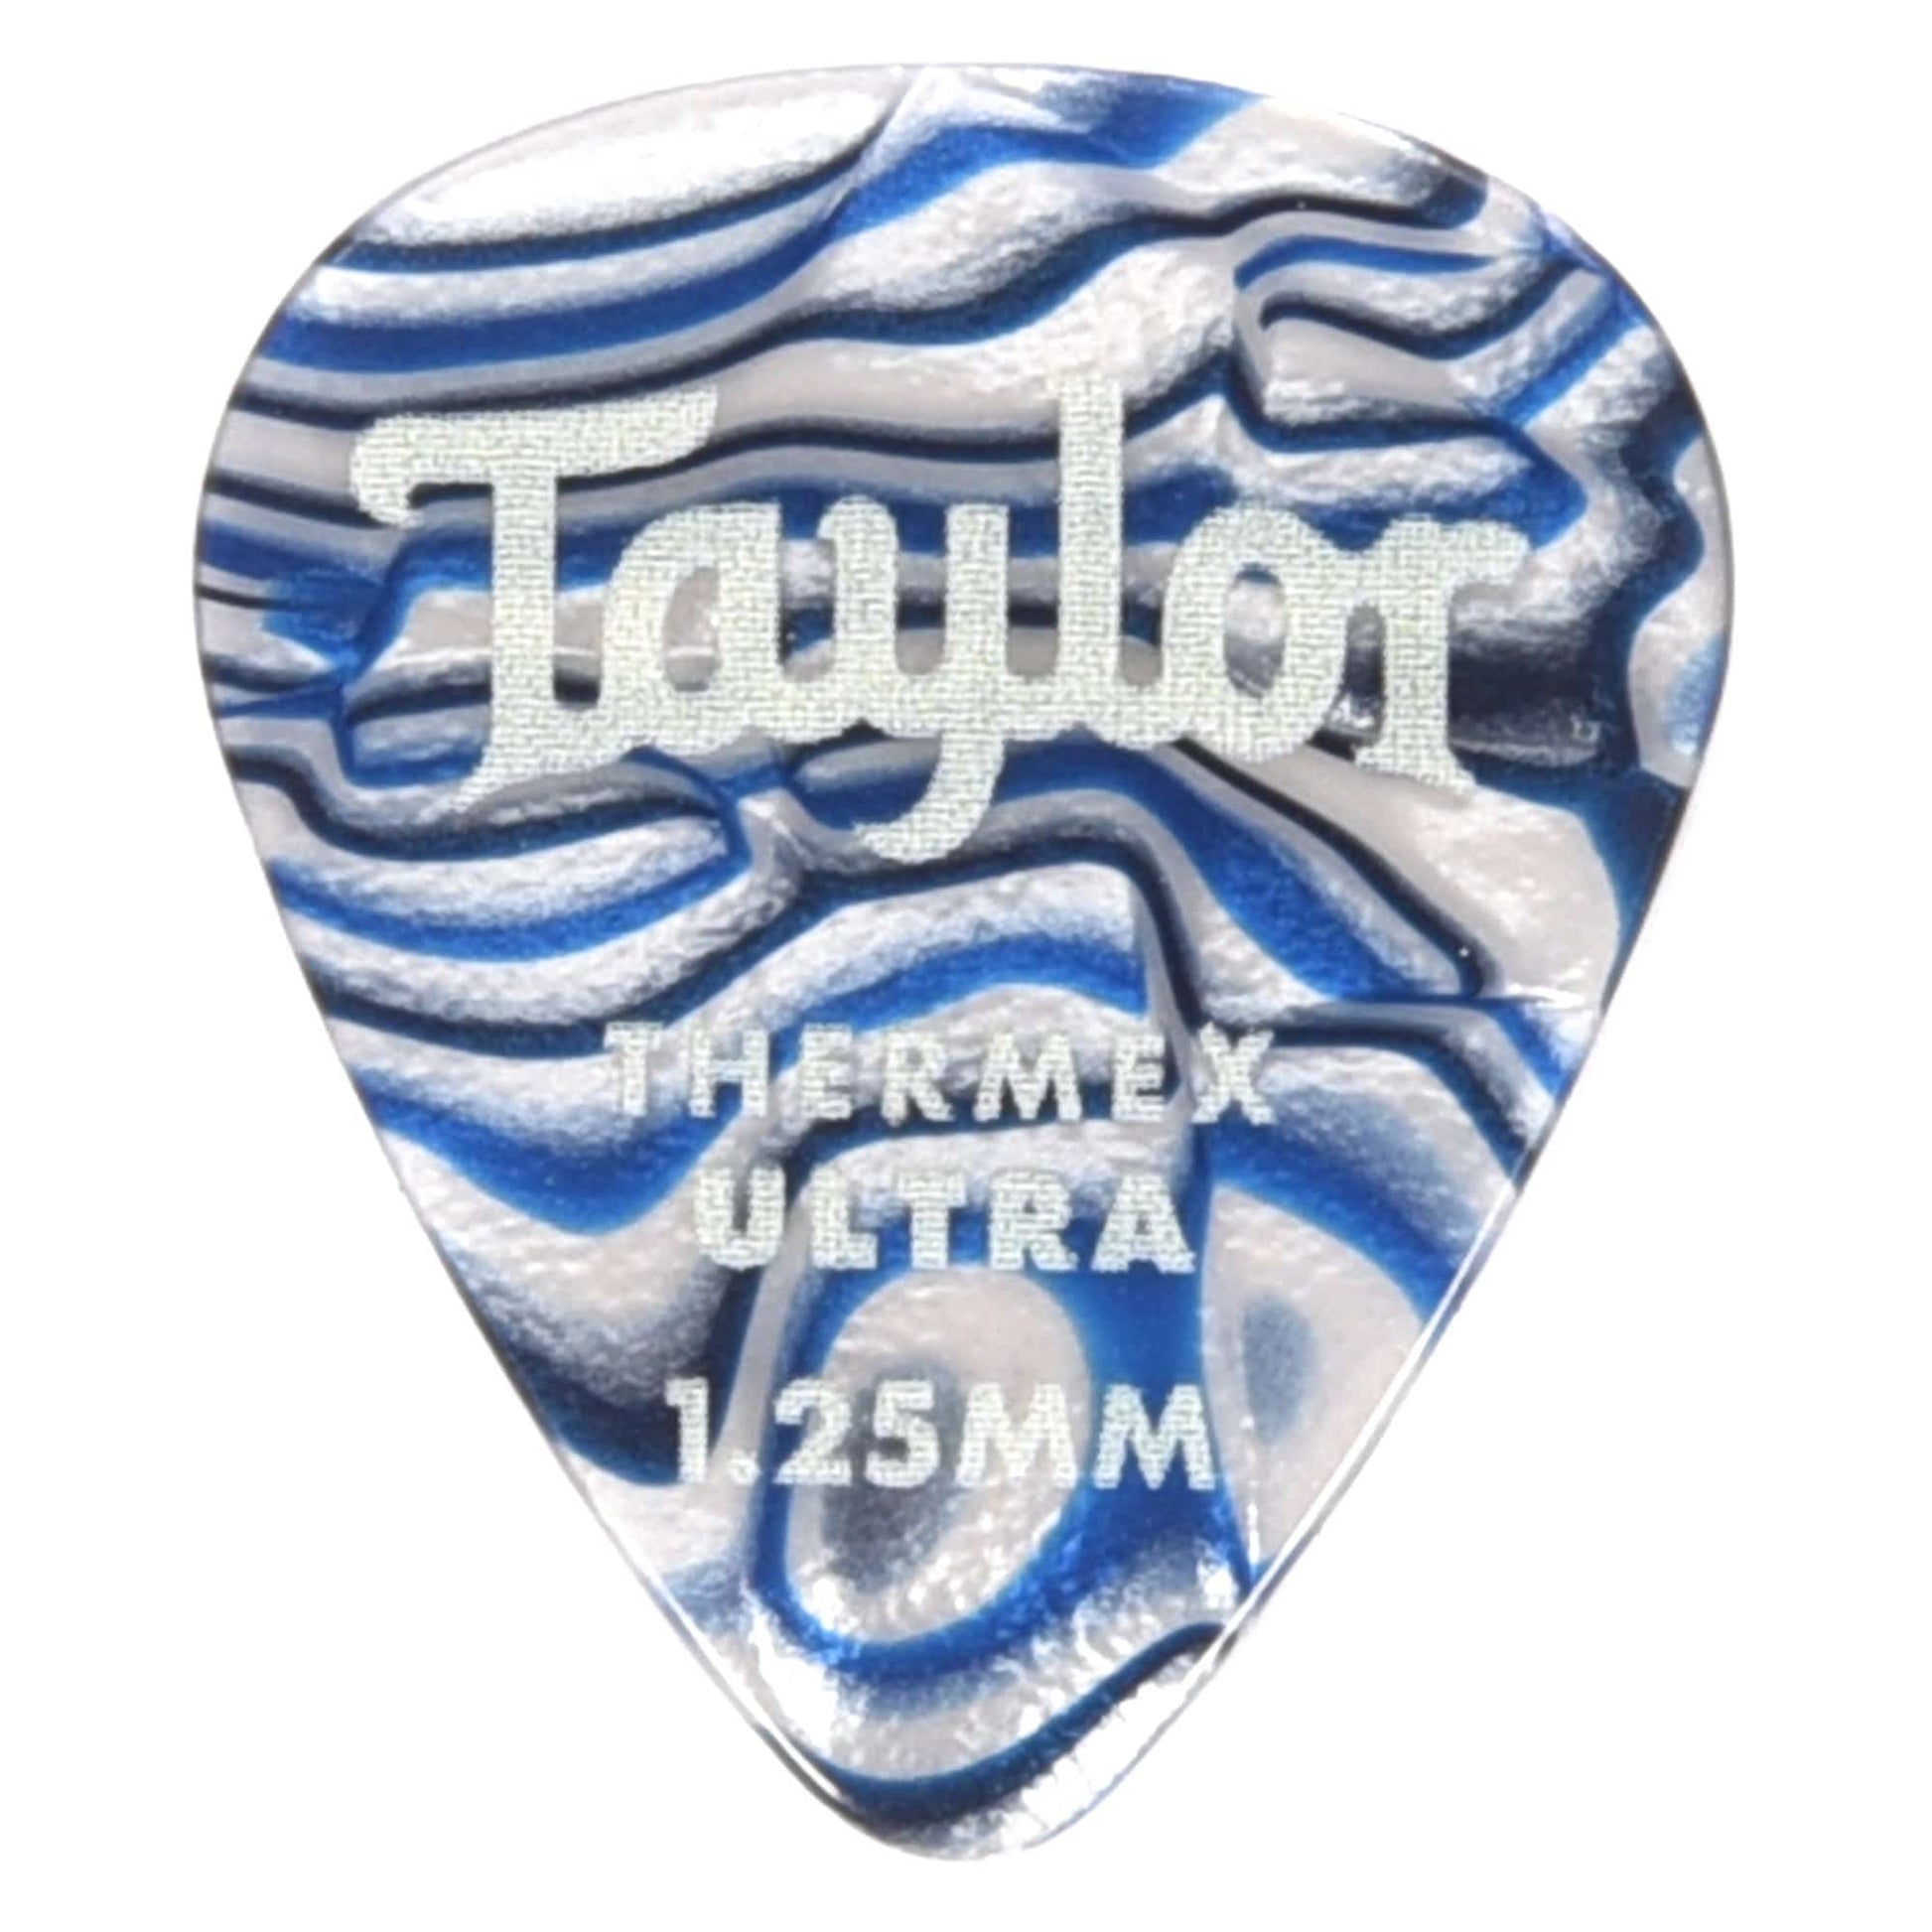 Taylor Premium Darktone 351 Thermex Ultra Picks Blue Swirl 1.25mm 2 Pack (12) Bundle Accessories / Picks